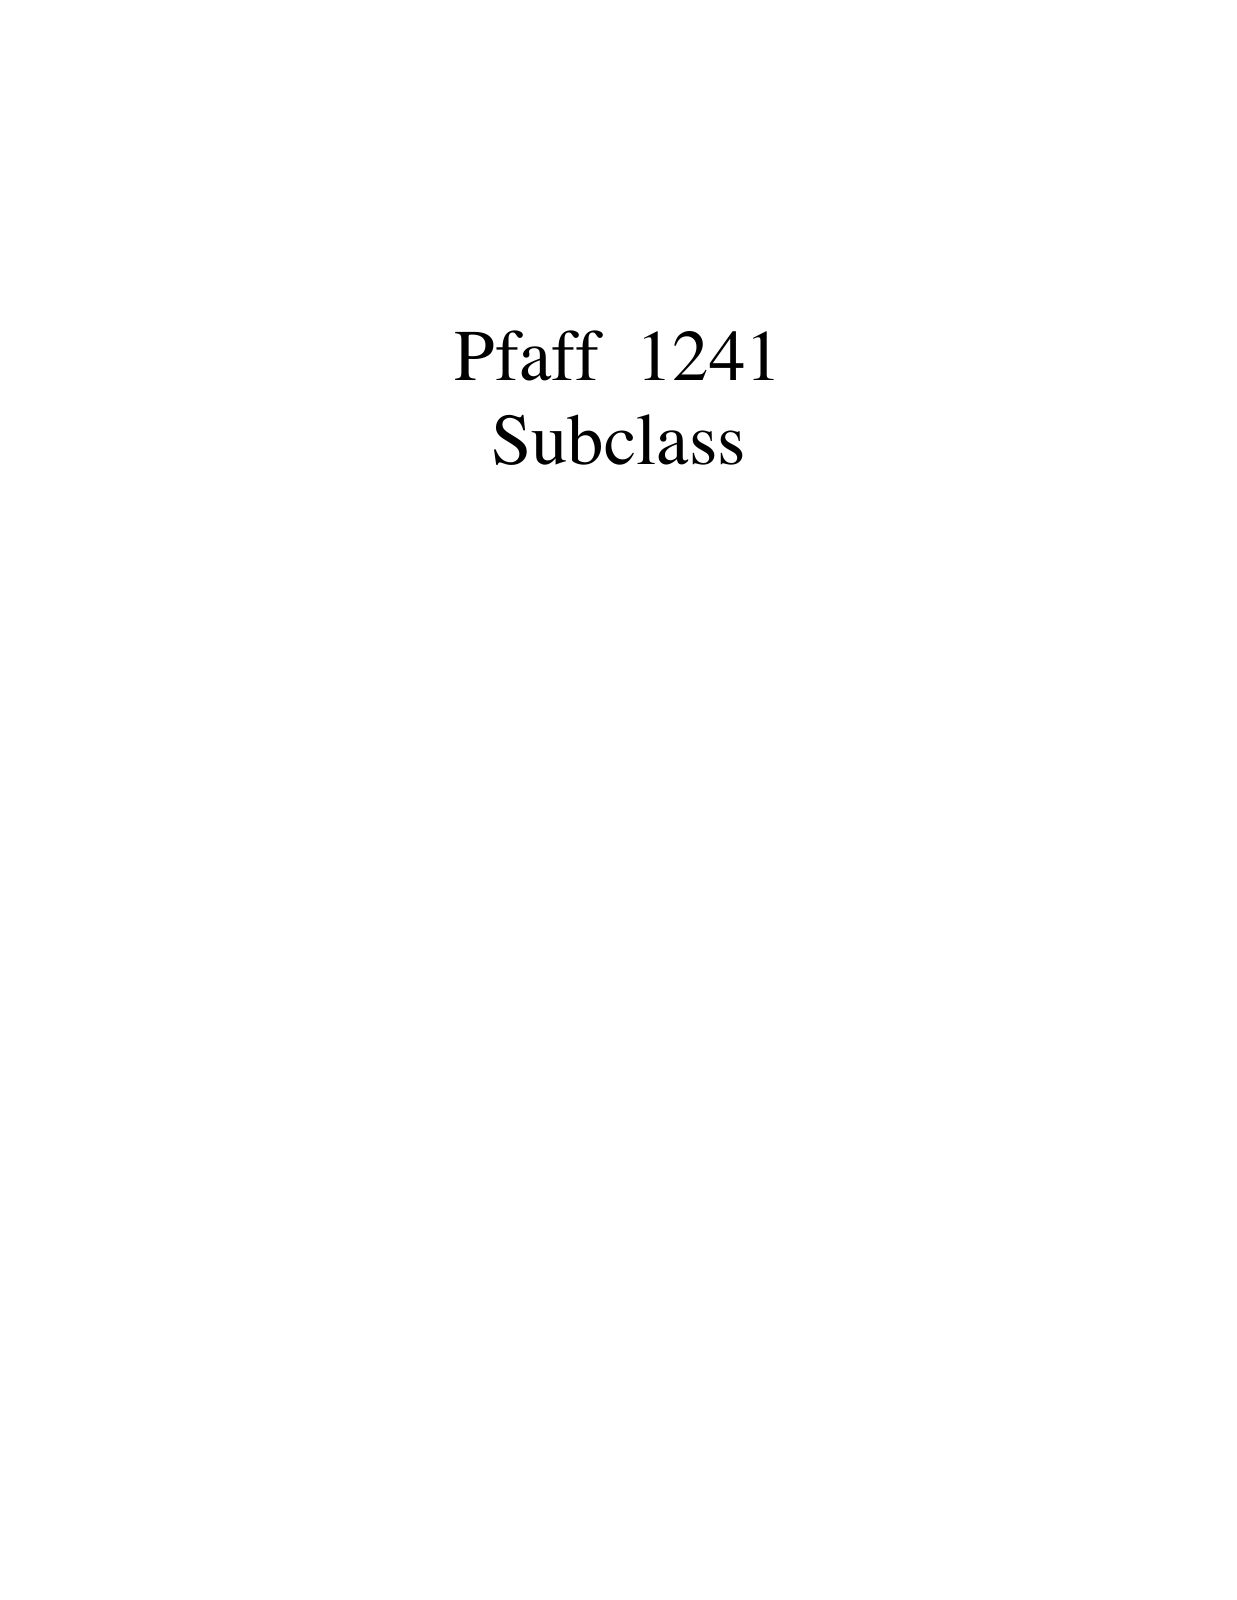 PFAFF 1241 Parts List